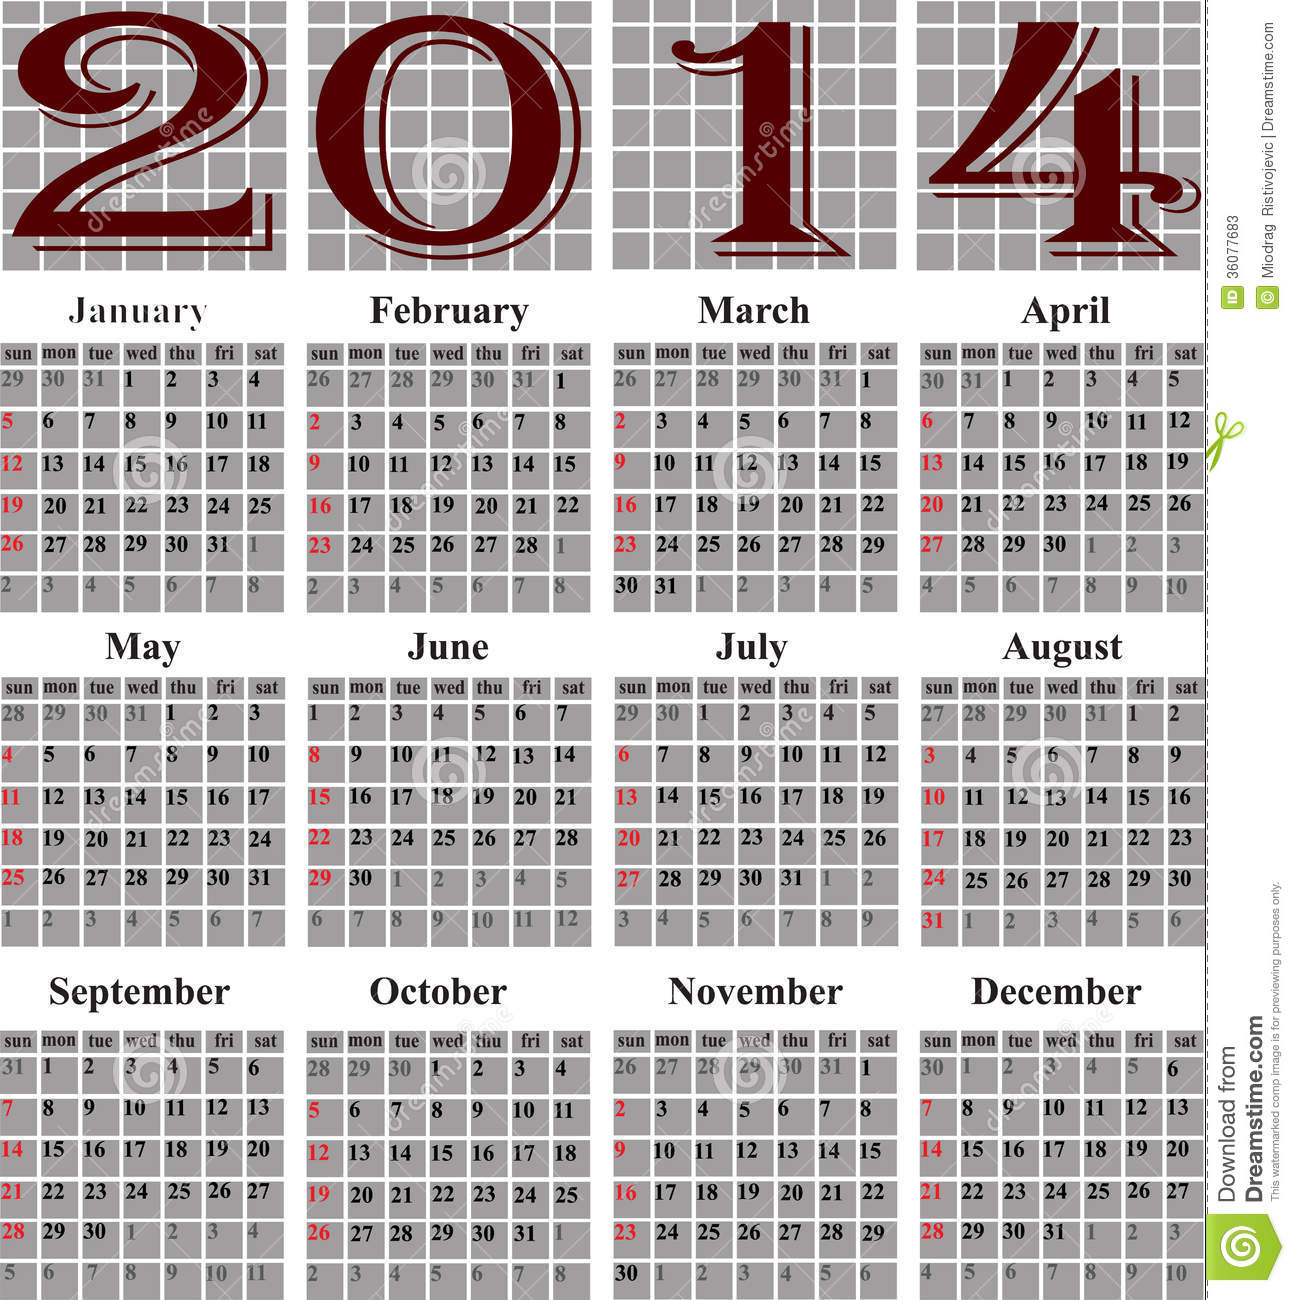 julian calendar 2014 Ideal.vistalist.co